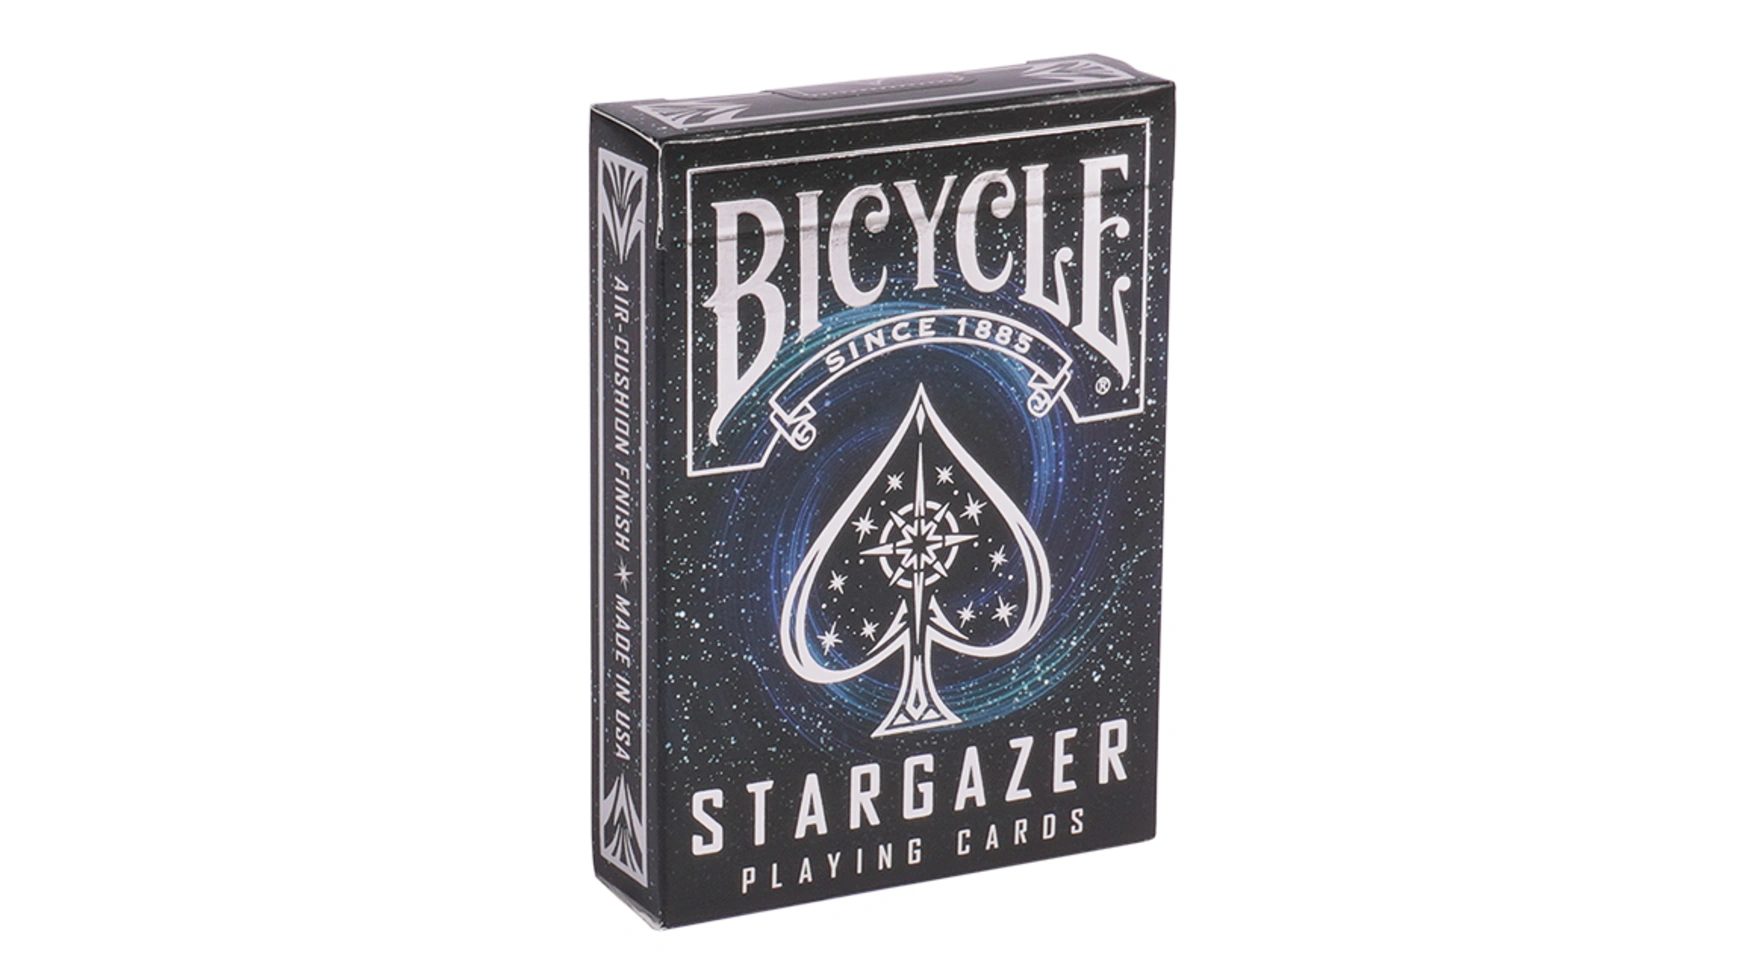 Bicycle колода карт для покера, карточная игра Stargazer uspcc игральные карты bicycle pro poker peek uspcc сша 54 карты